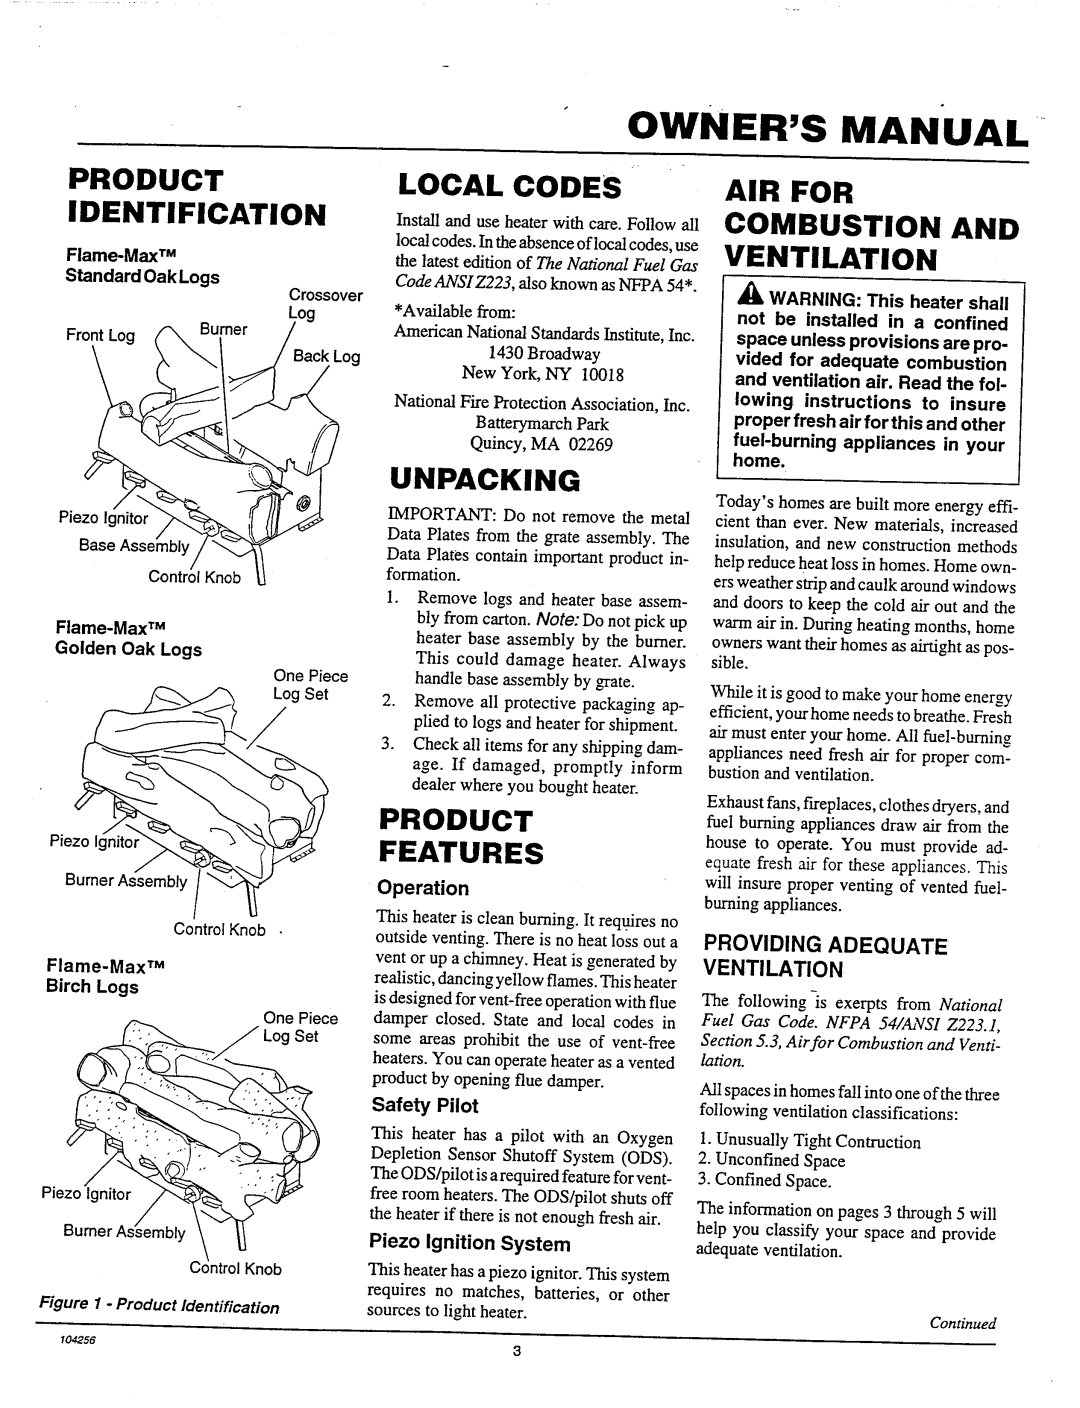 Vanguard Managed Solutions Golden Oak Log Design, Vintage Oak Log Design, Birch Log Design manual 